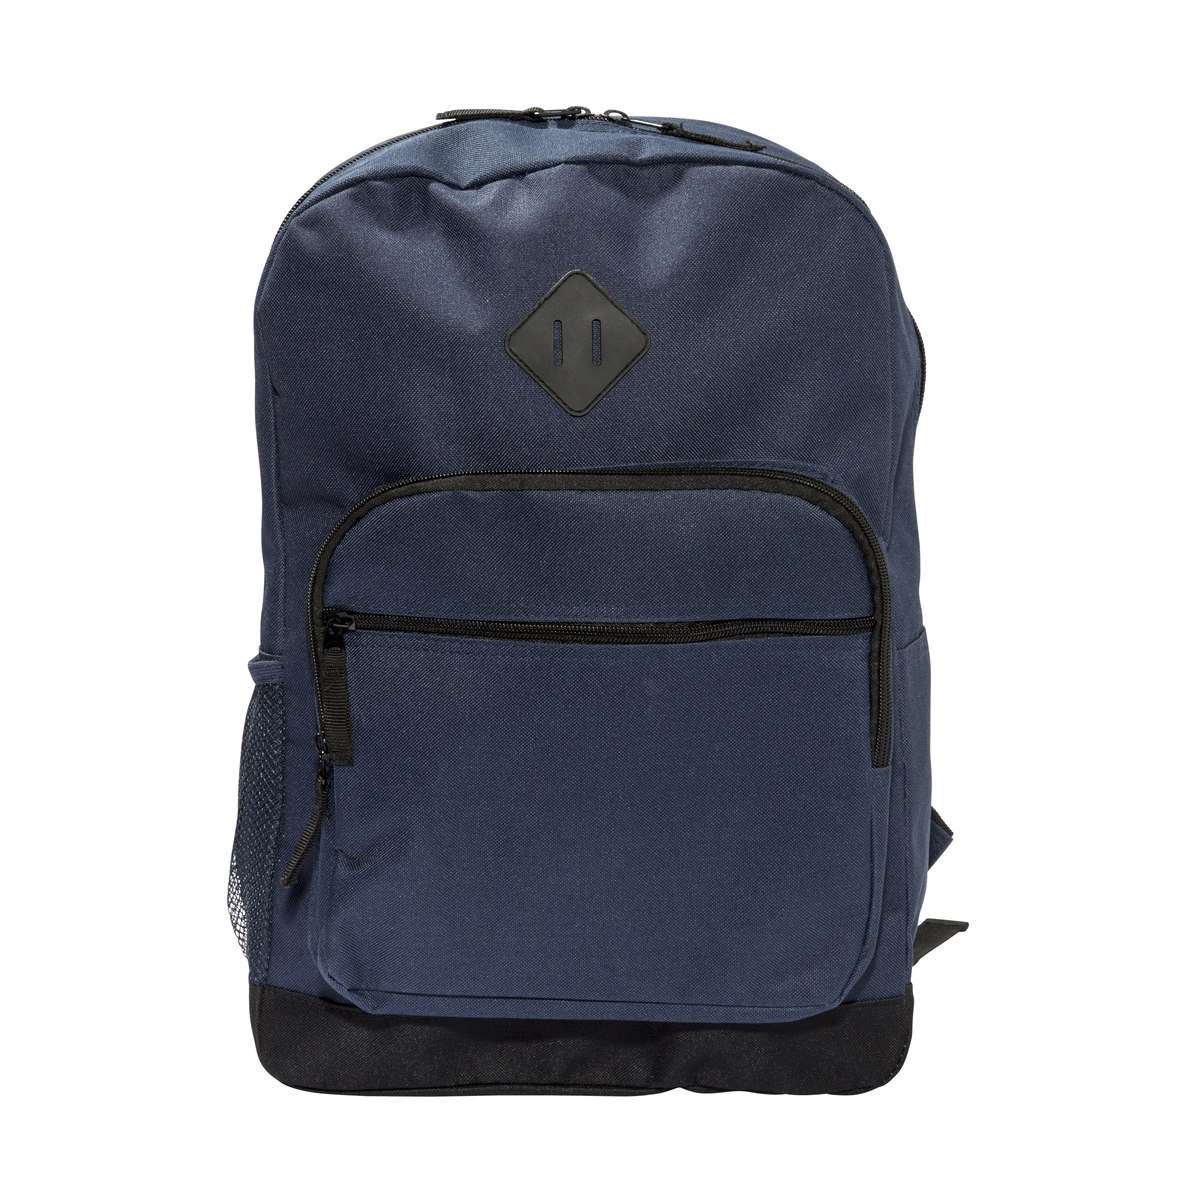 Blue & Black 20L Basic Backpack | Kmart